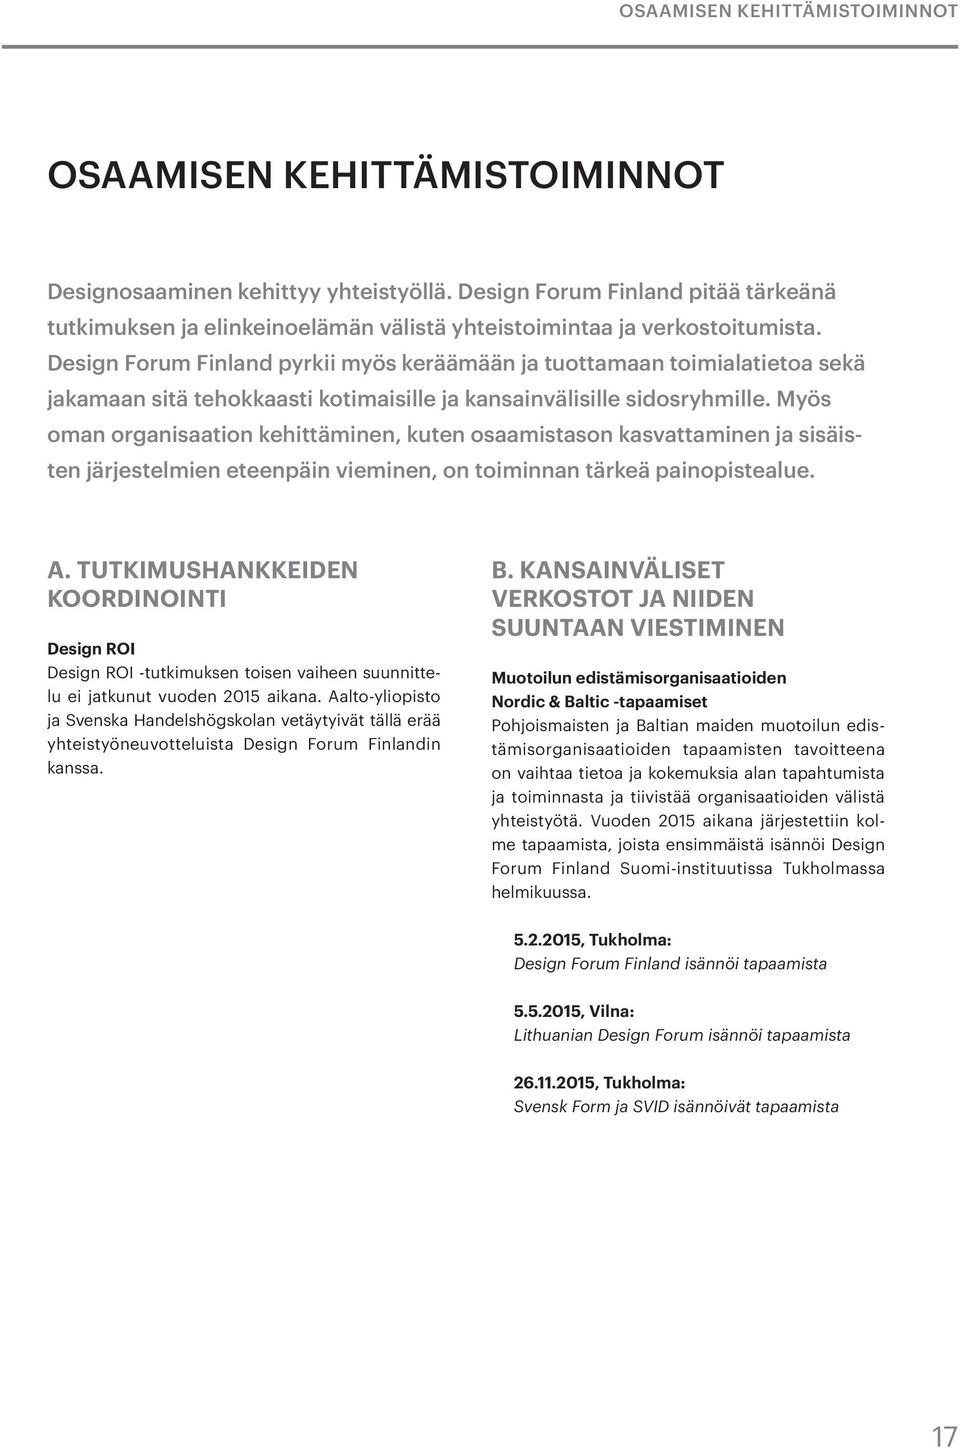 Design Forum Finland pyrkii myös keräämään ja tuottamaan toimialatietoa sekä jakamaan sitä tehokkaasti kotimaisille ja kansainvälisille sidosryhmille.